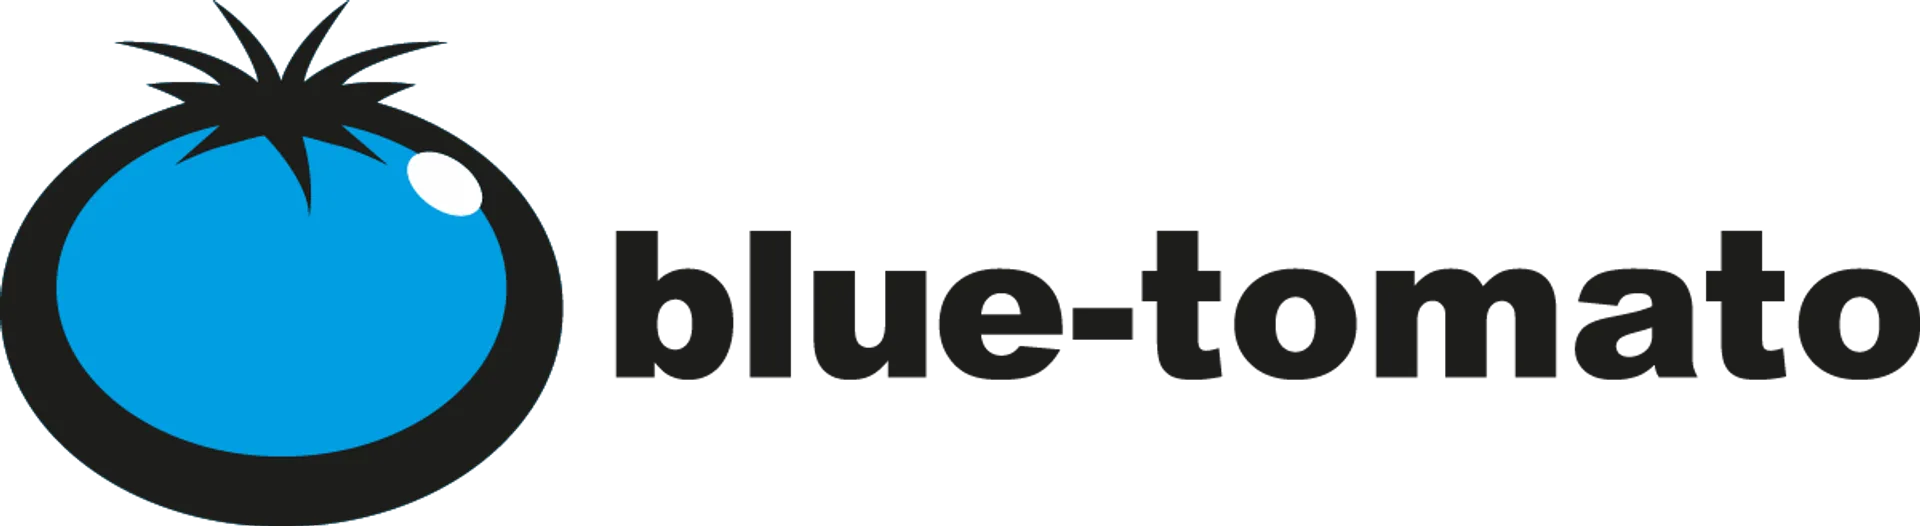 BLUE TOMATO logo